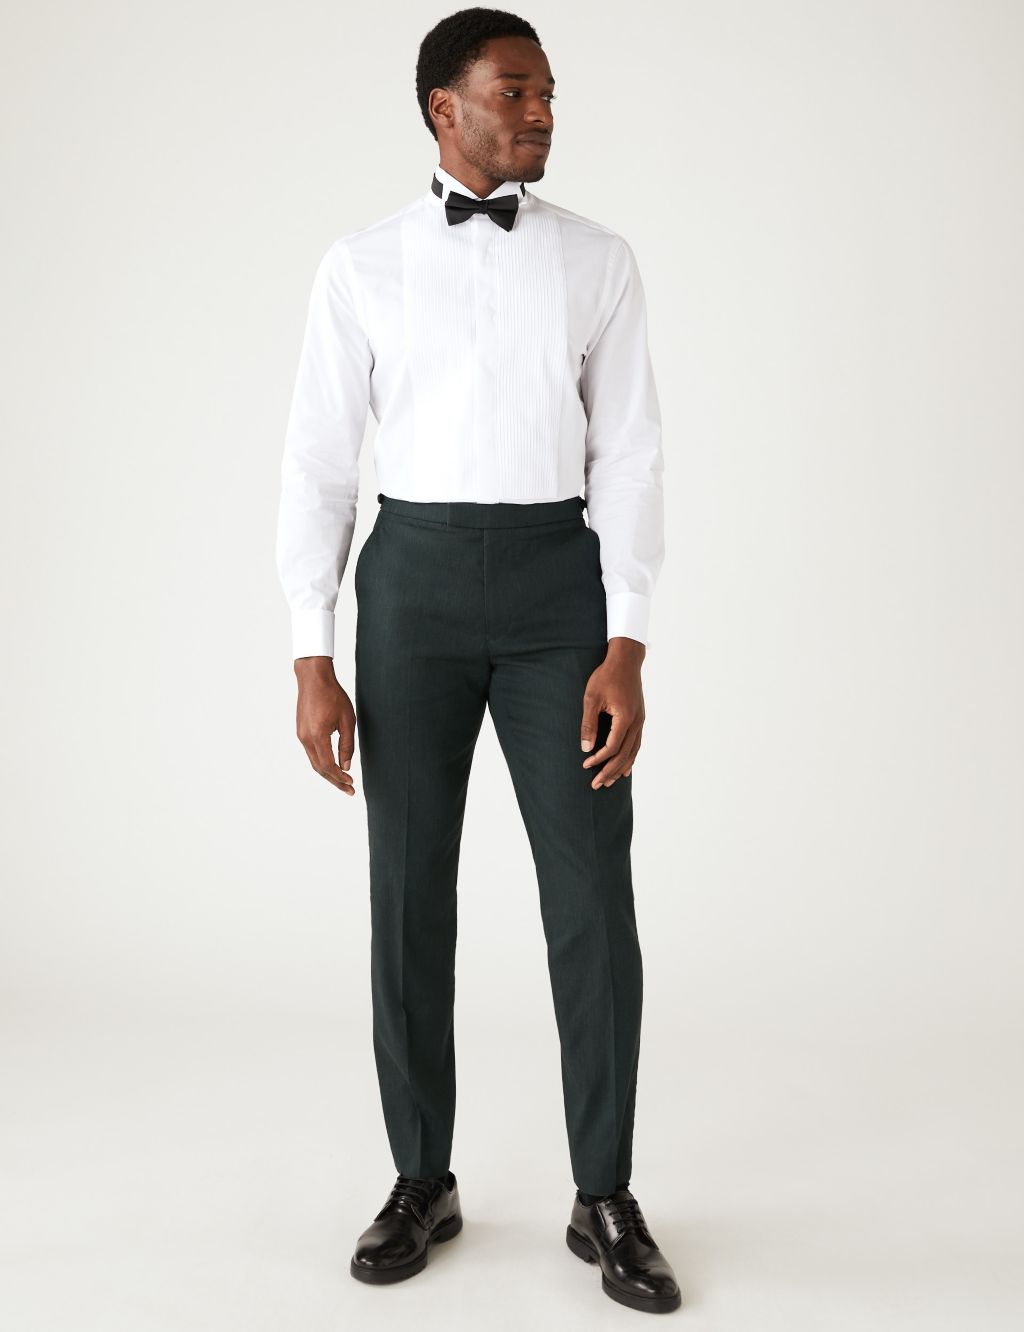 Tailored Fit Italian Linen Miracle™ Tuxedo image 4